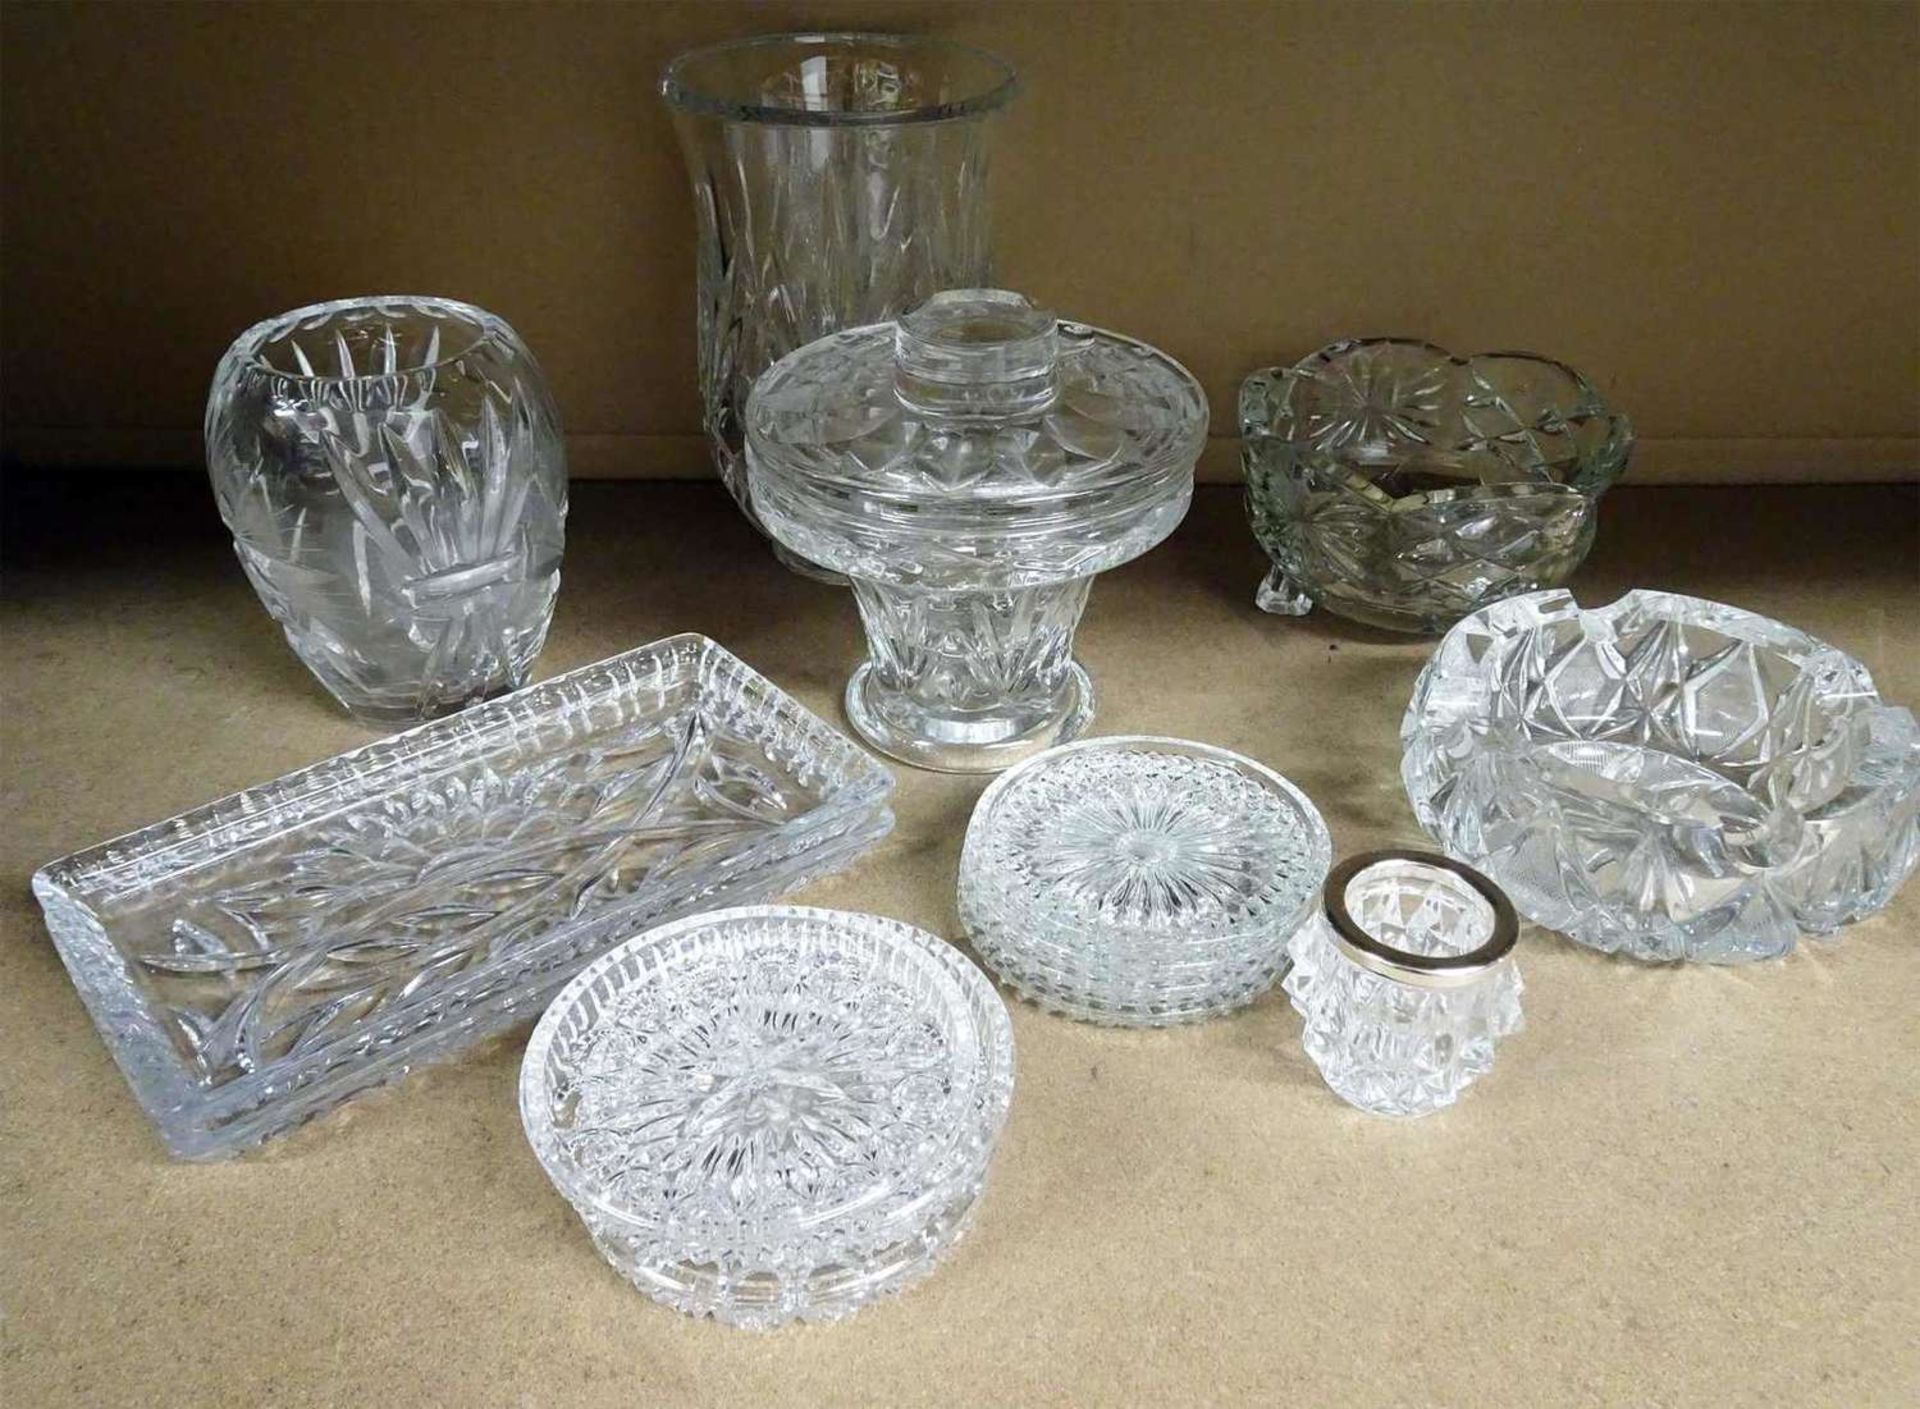 Lot Bleikristall, dabei Vasen, Schalen, etc. Guter Zustand.Lot lead crystal, with vases, bowls, etc.